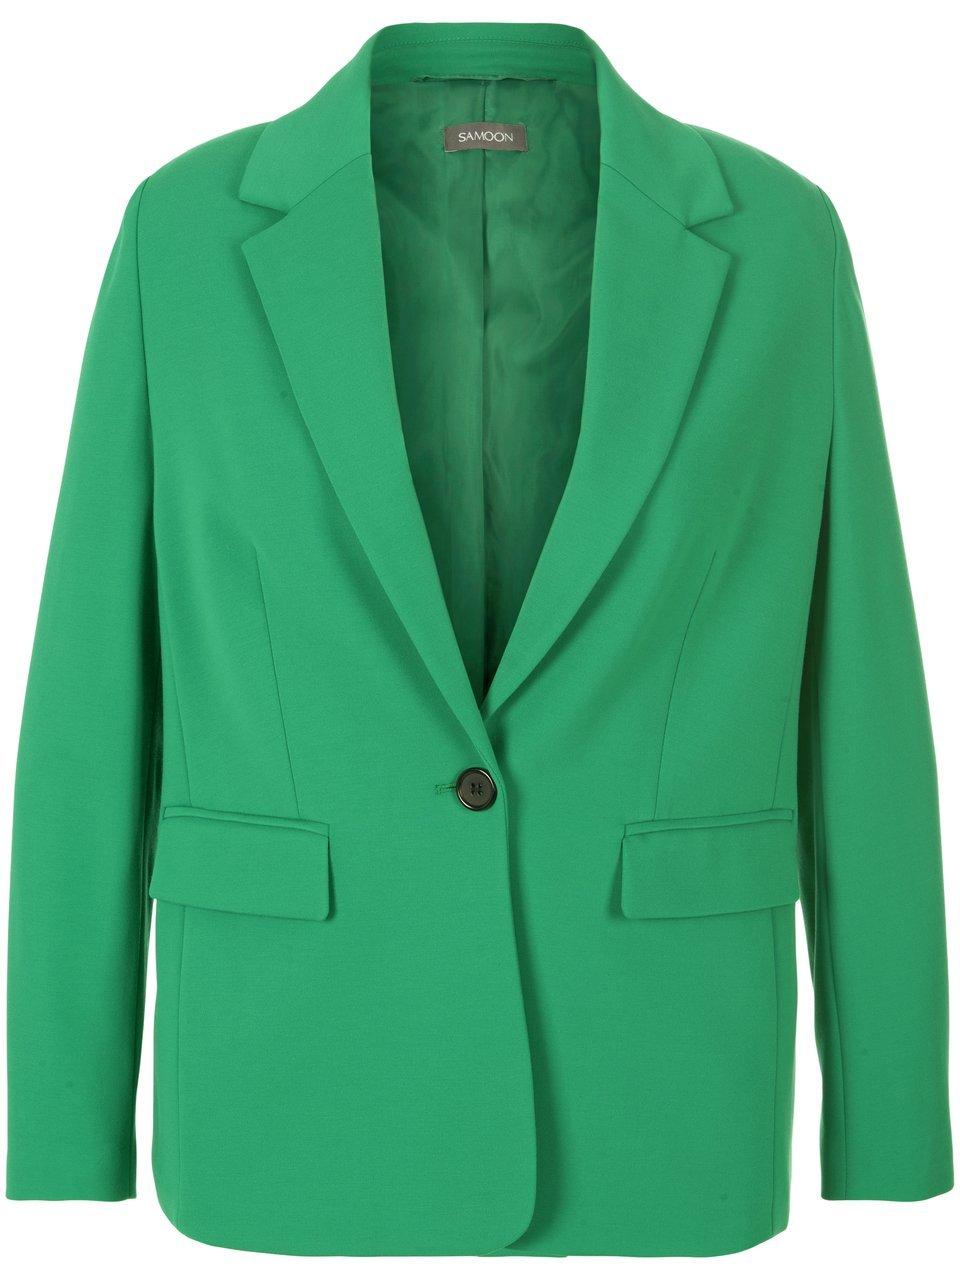 Jersey blazer in afkledend model Van Samoon groen